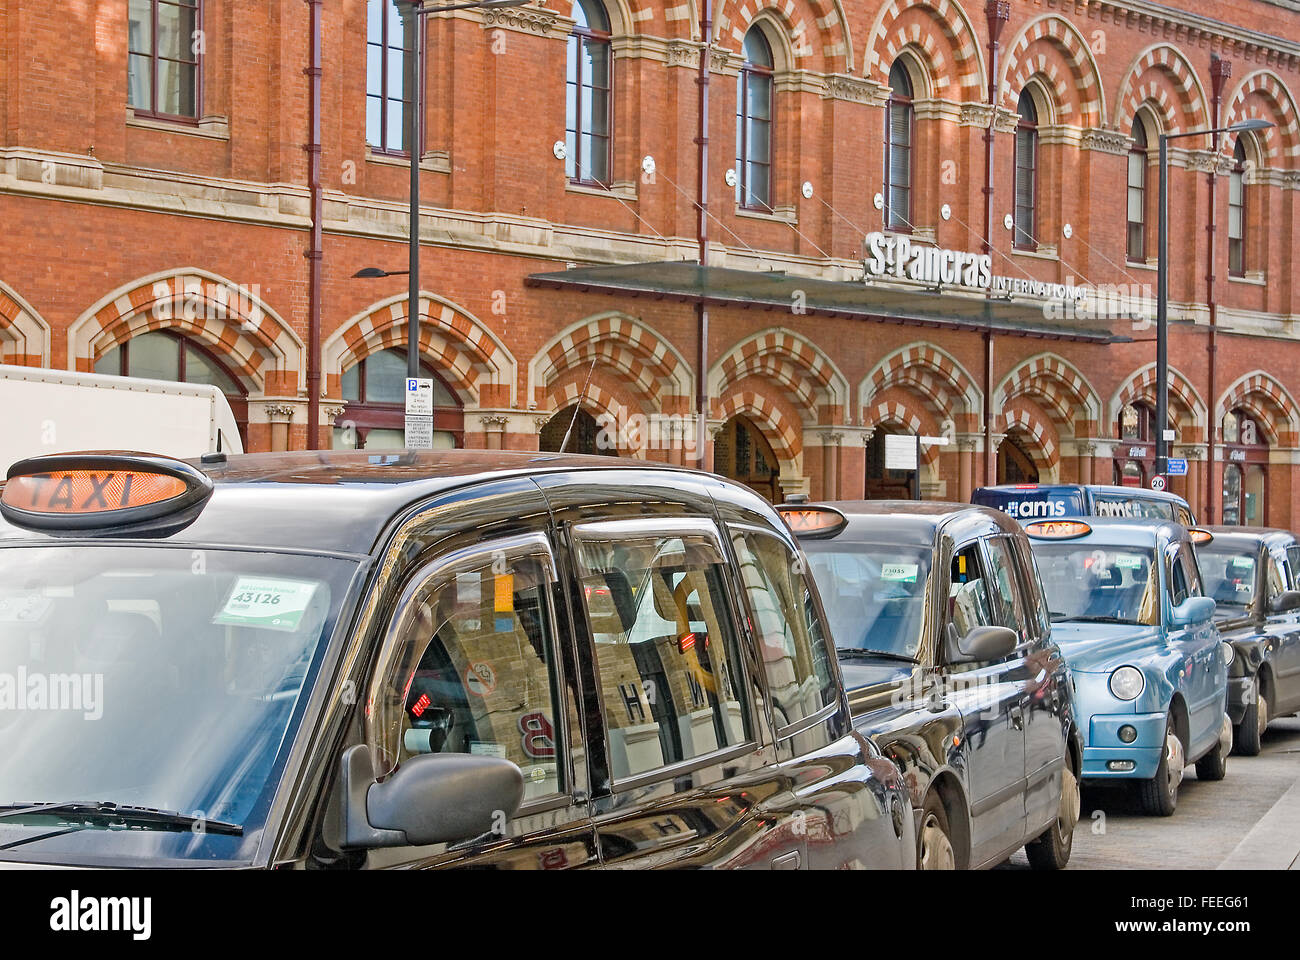 Una linea di nero iconico Londra taxi attendere al di fuori di St Pancras International Station, punto di arrivo per Eurostar e servizi ferroviari nazionali. Foto Stock